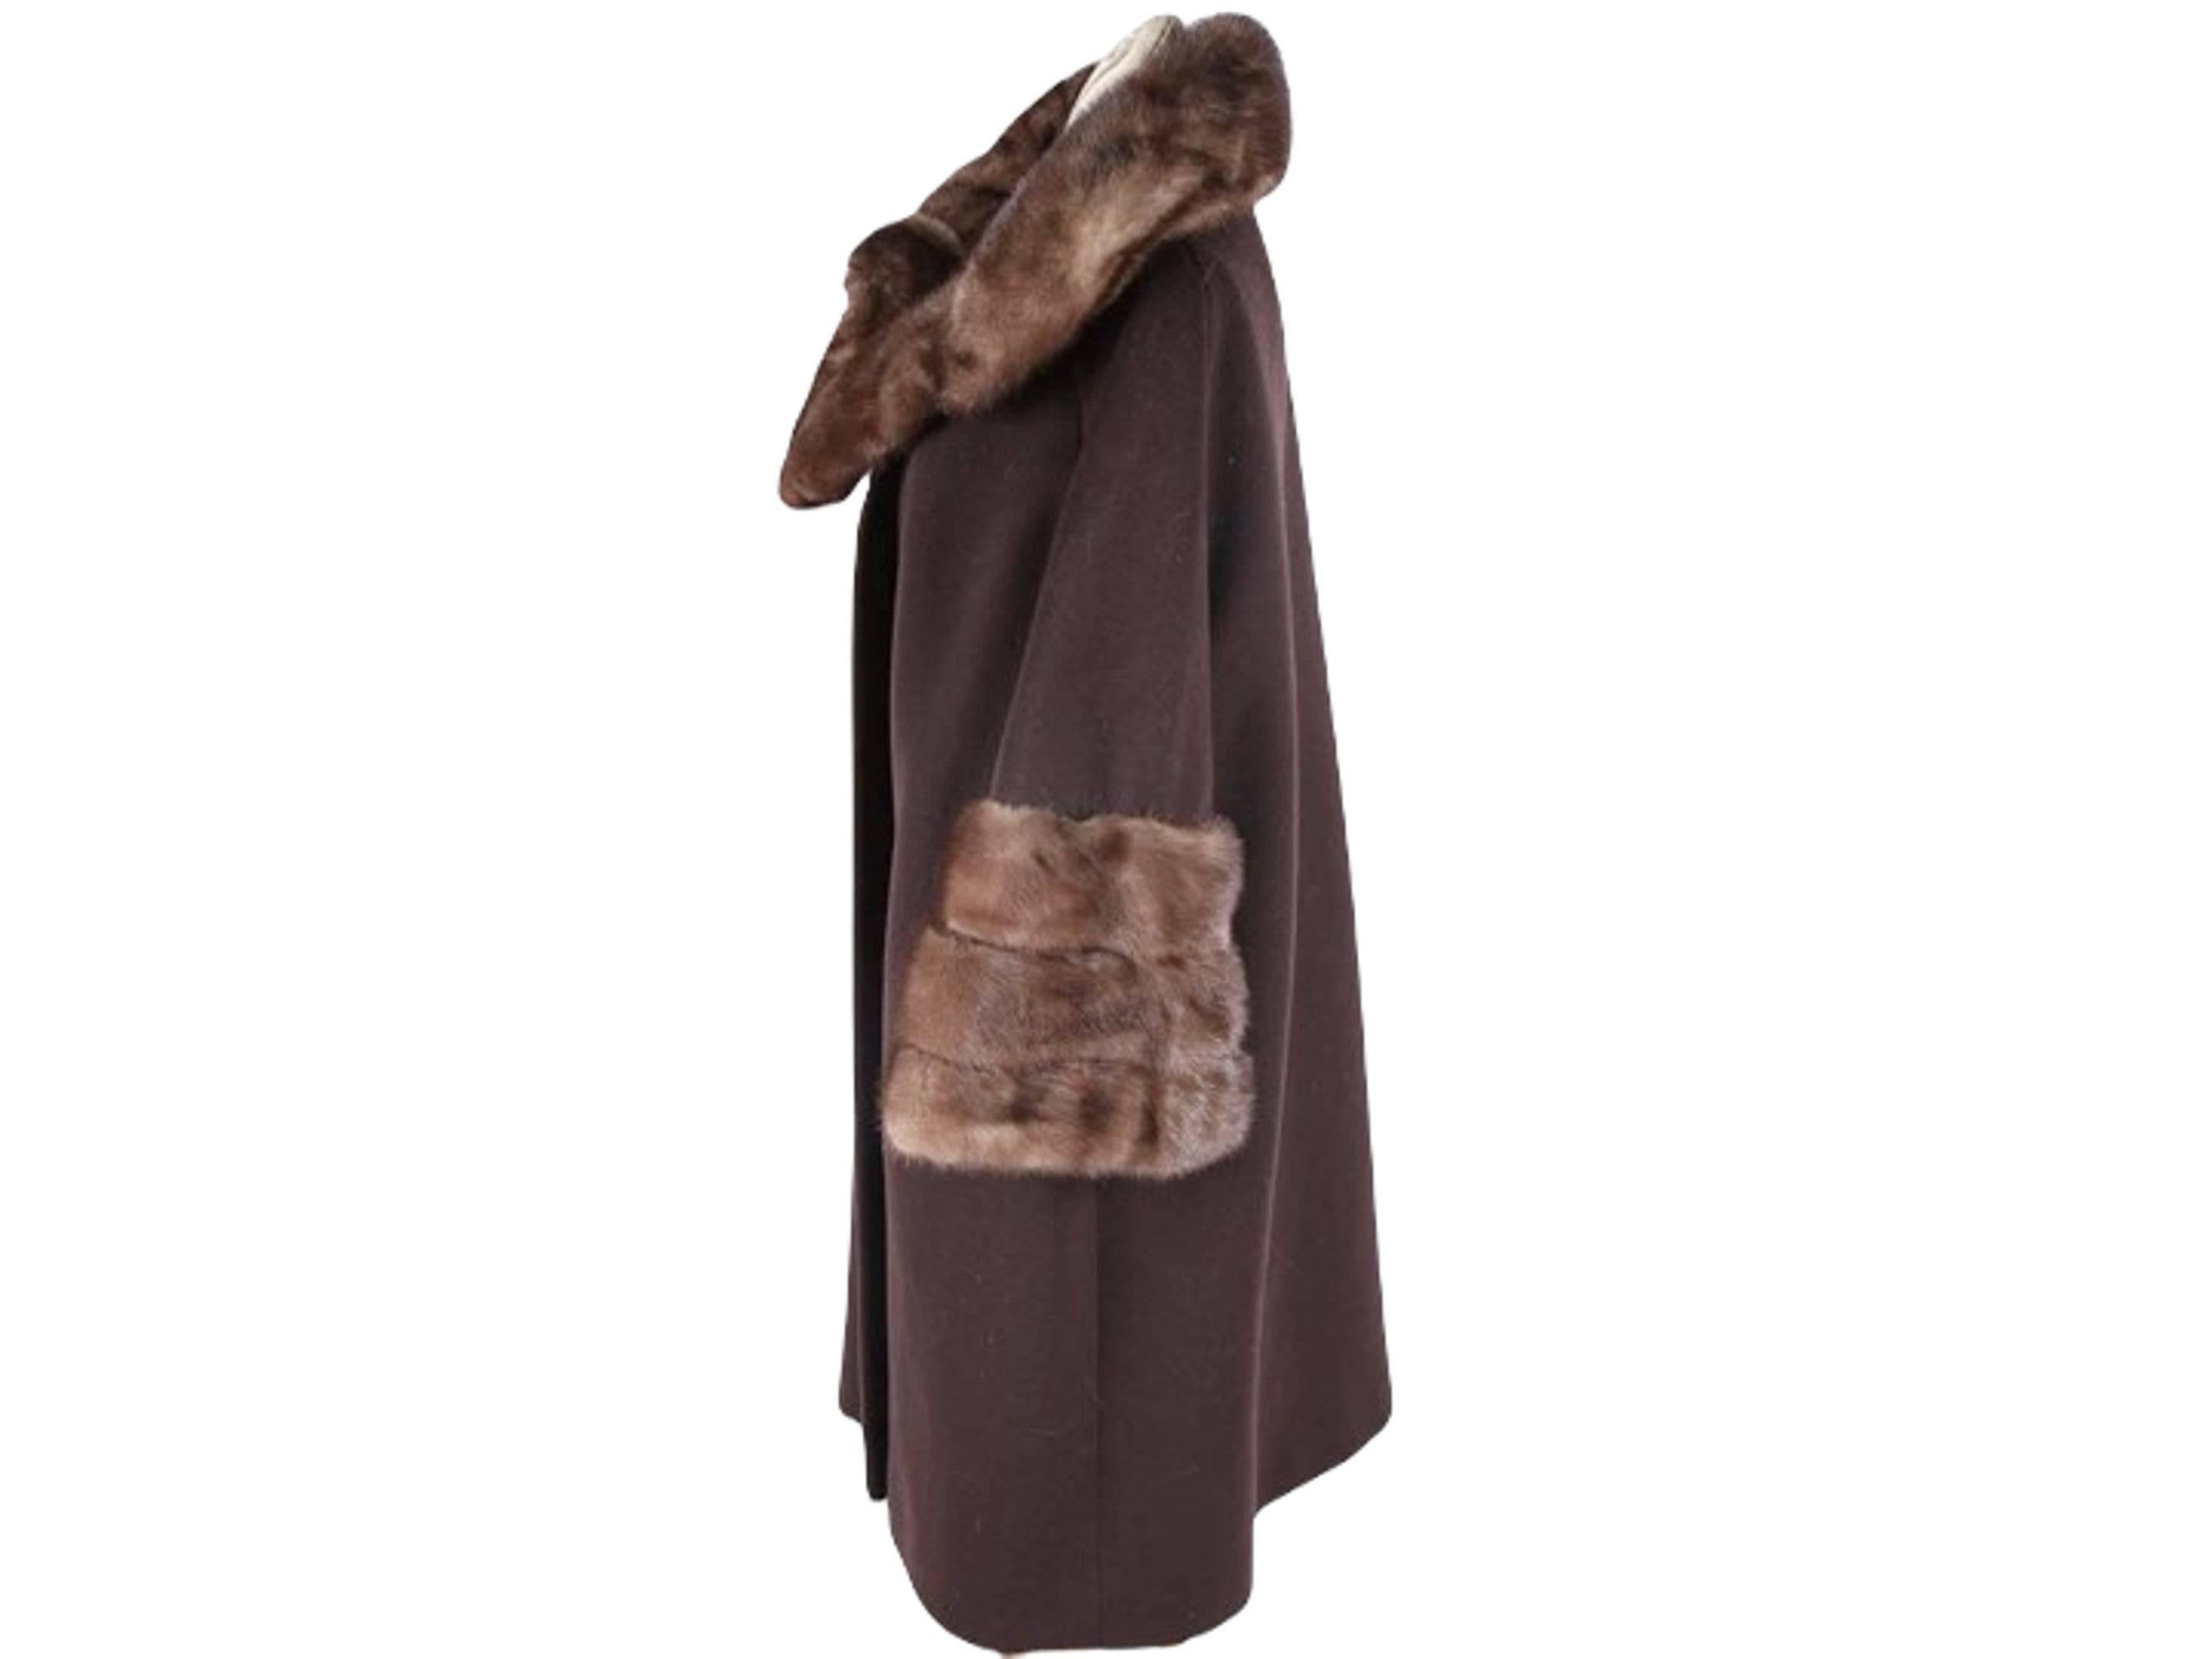 Dieser Mantel ist einfach umwerfend - ein exquisiter Mantel aus Wolle und Nerzpelz von Blin + Blin, der in den 1950er Jahren gefertigt wurde. Die luxuriösen Nerzpelz-Akzente und die hochwertige Verarbeitung machen dieses Stück zu einer wirklich